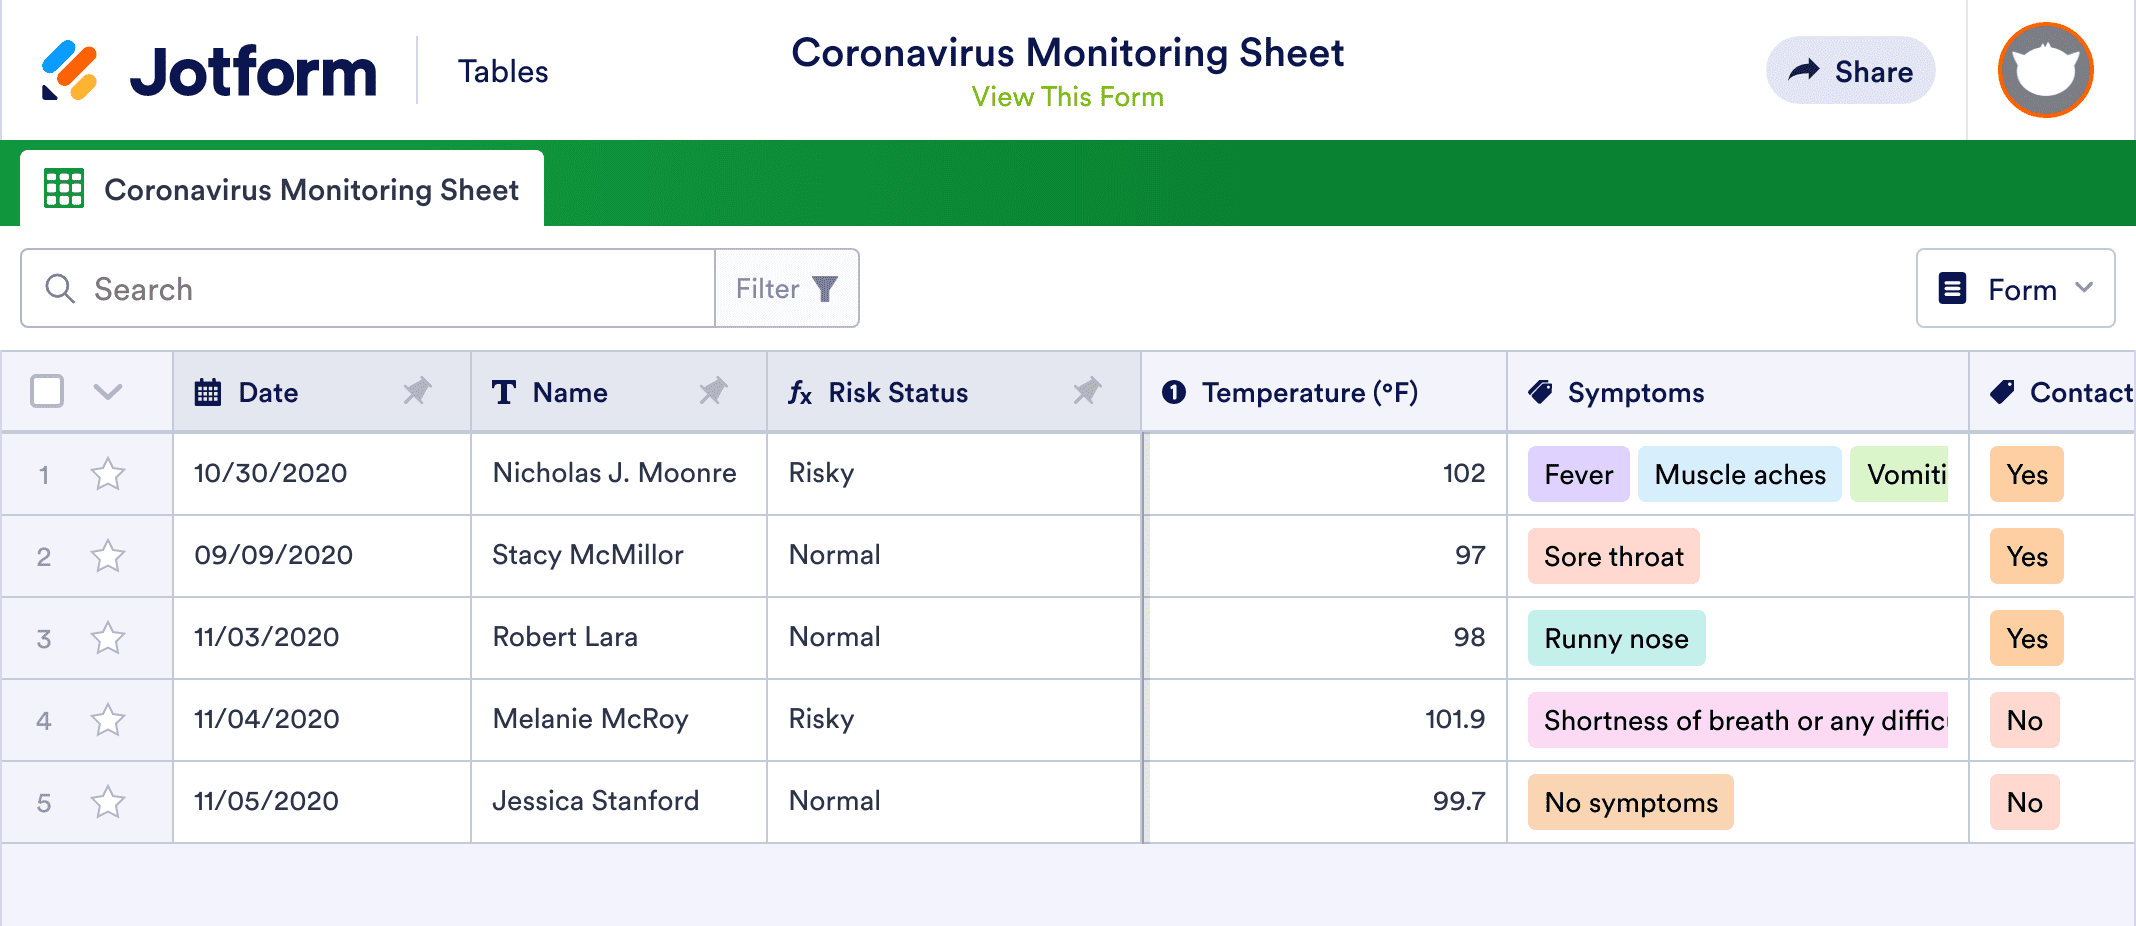 Coronavirus Monitoring Sheet